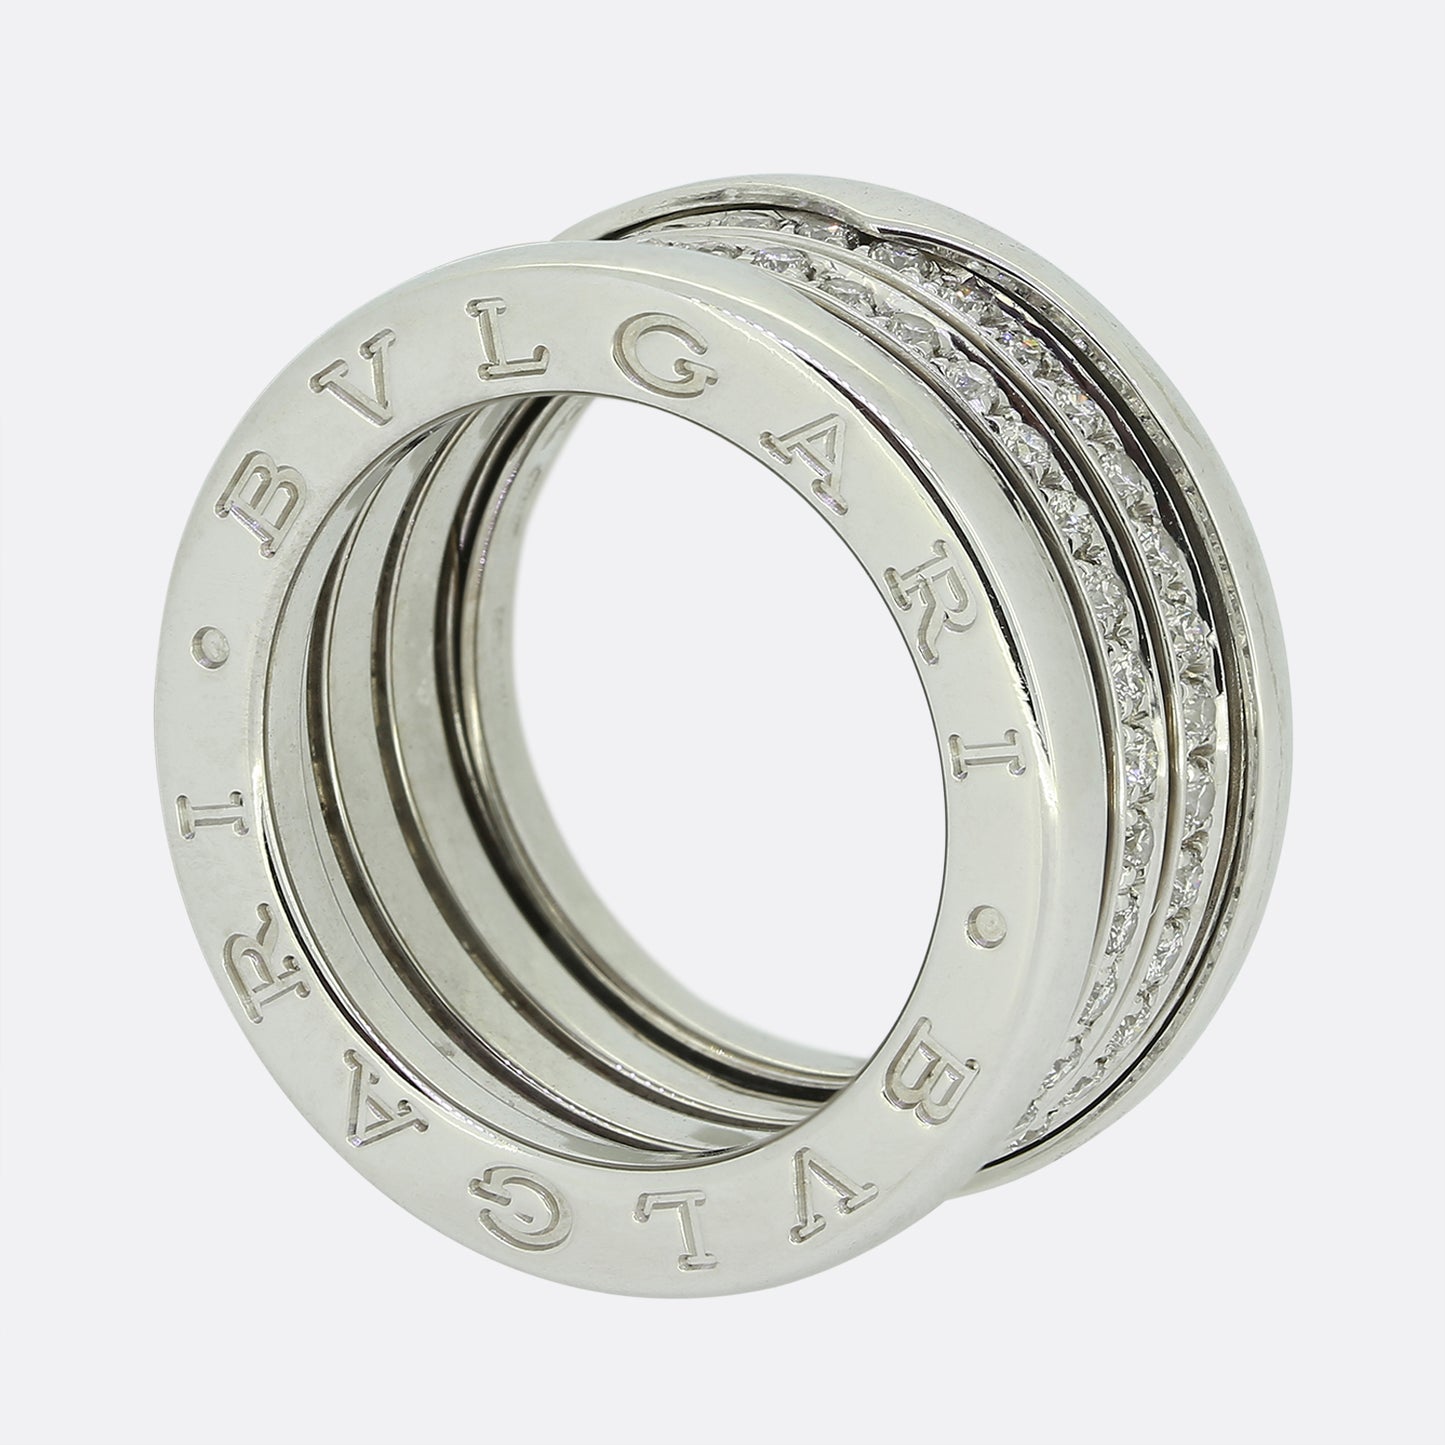 Bvlgari B.Zero1 Diamond Ring Size L (52)